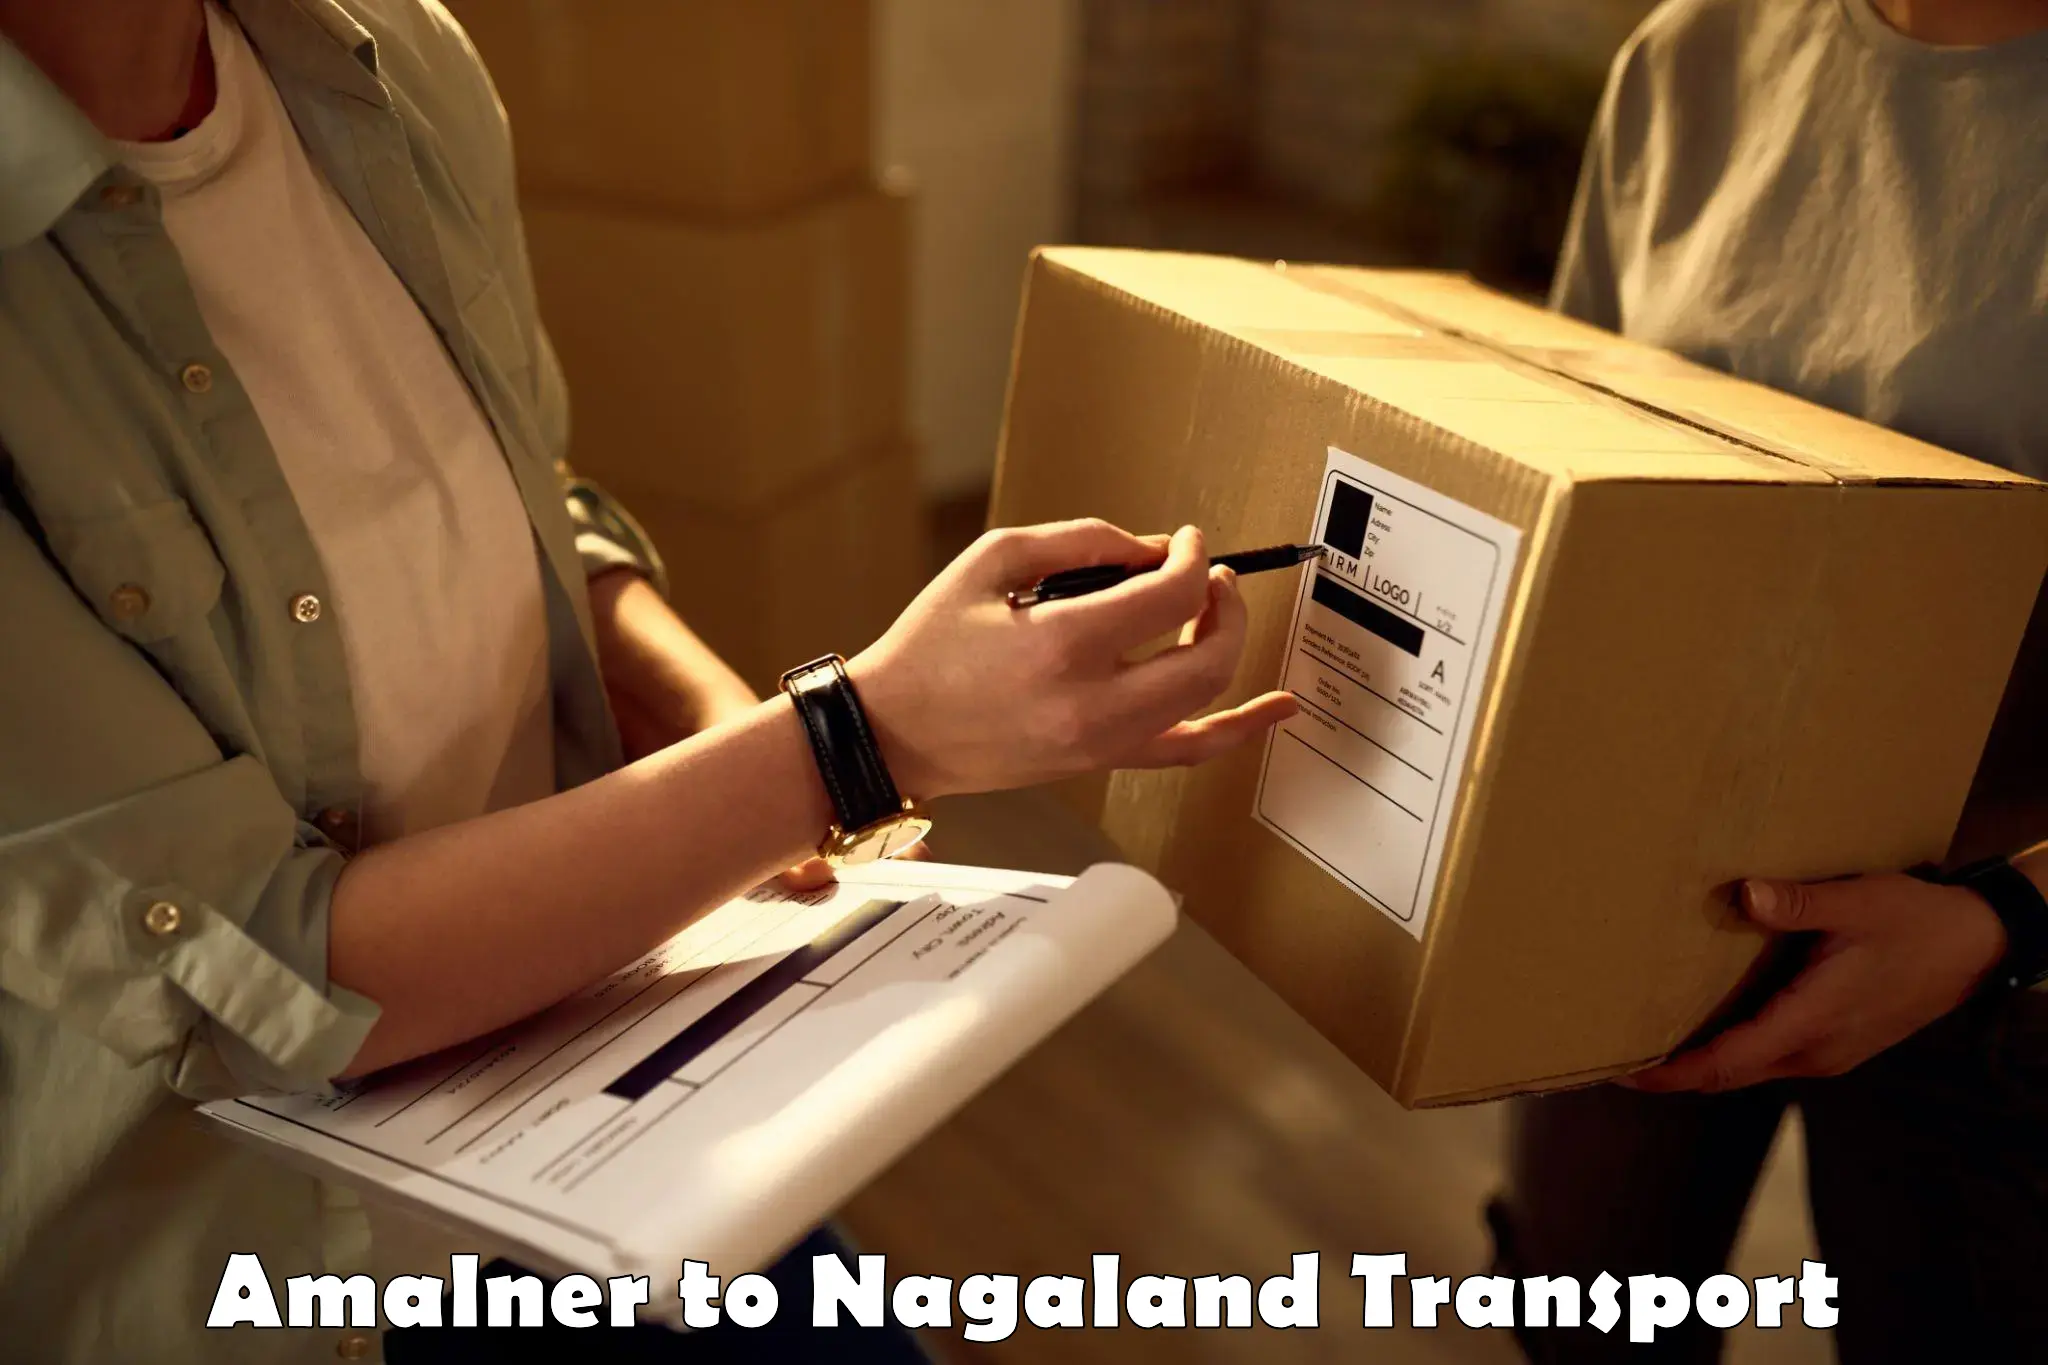 Delivery service Amalner to NIT Nagaland